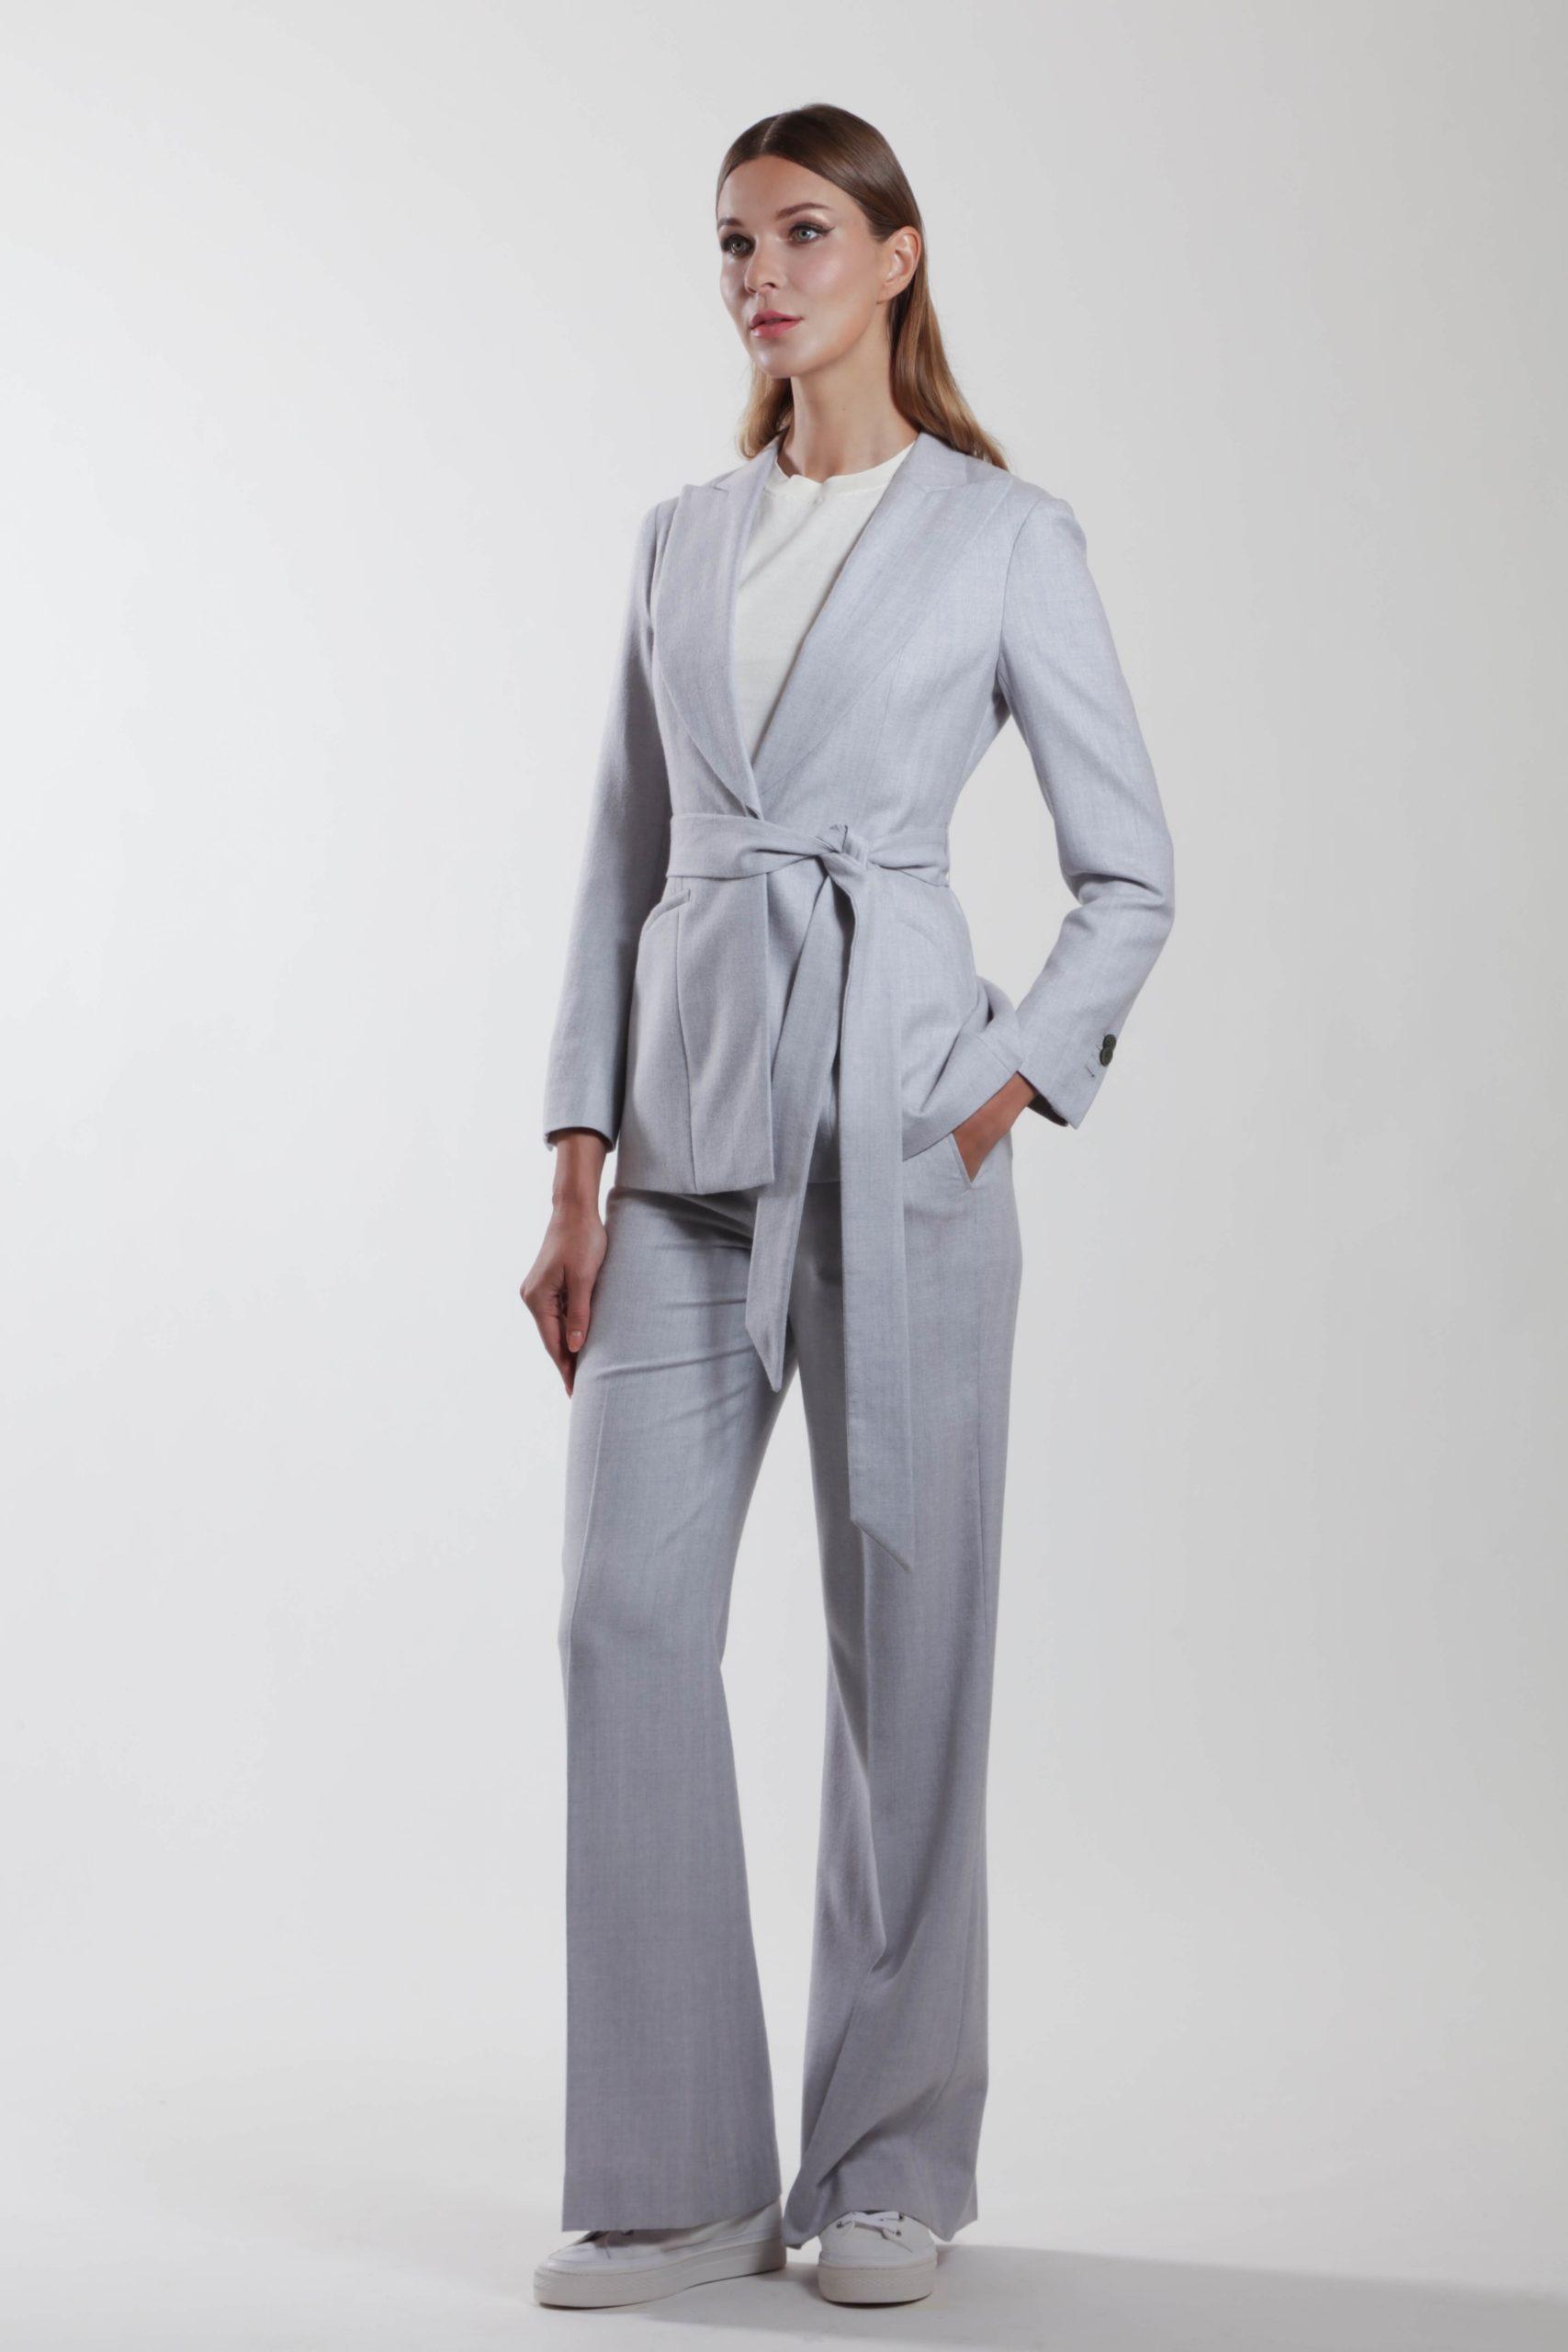 Montpellier – Wool suit jacket with peaked lapels sky grey herringbone